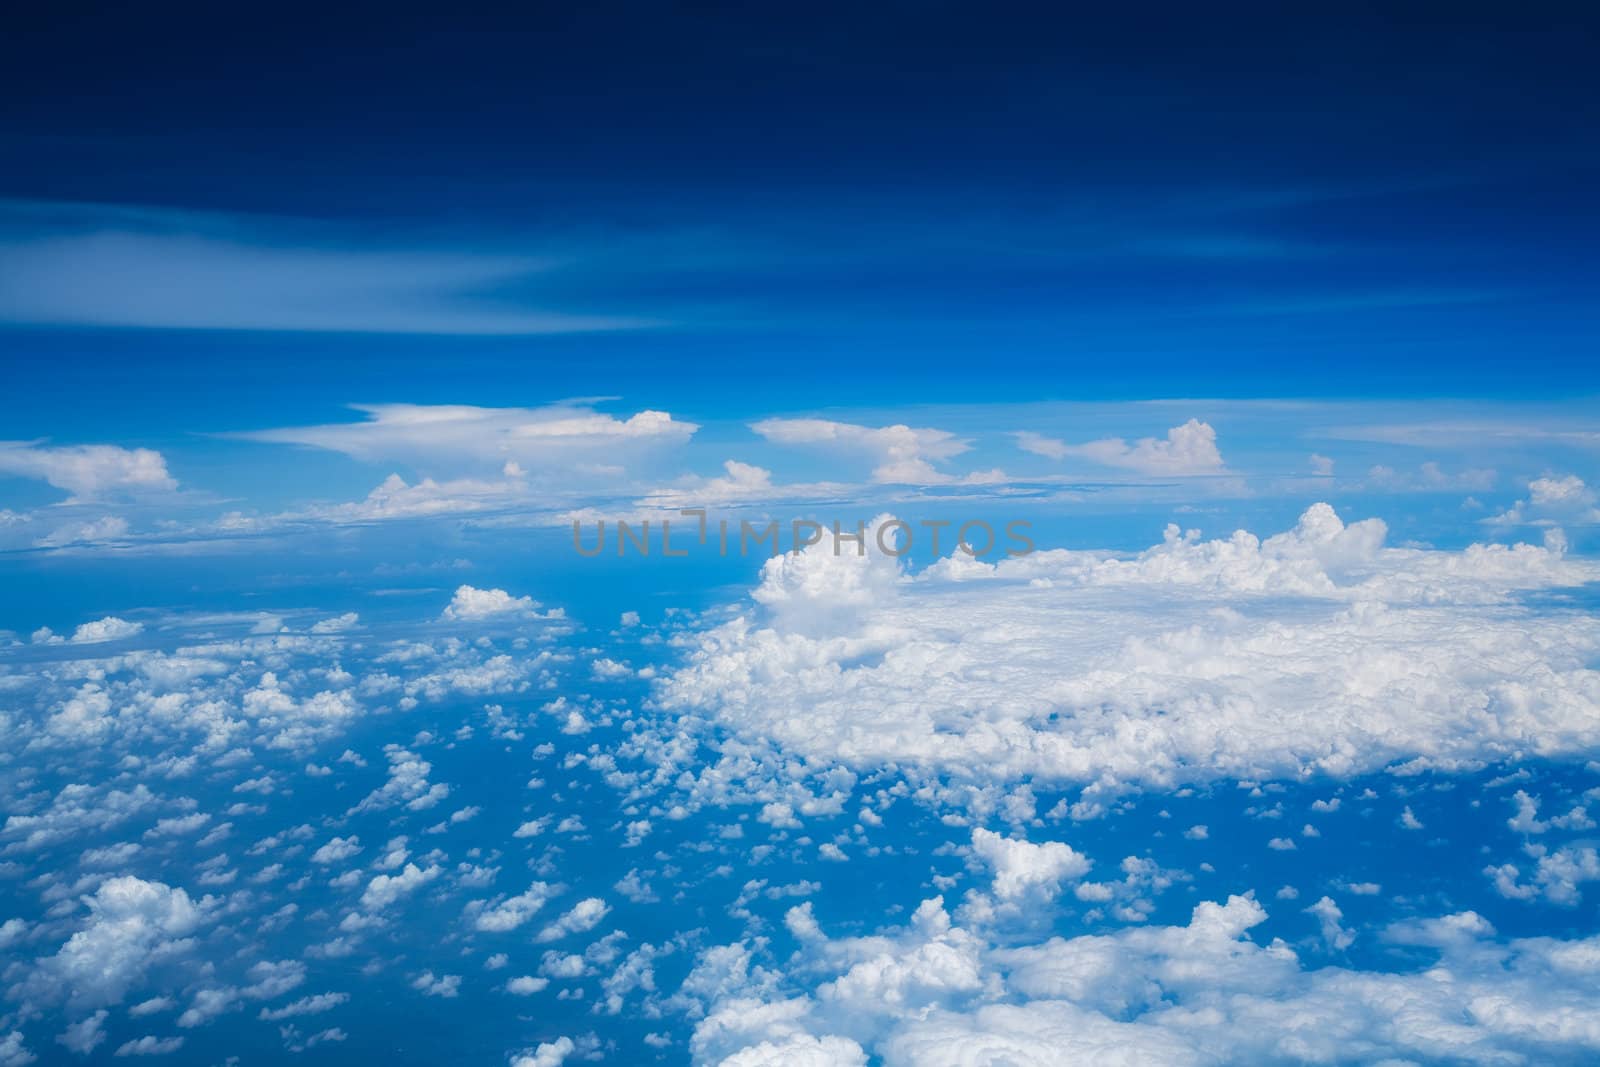 Beautiful skyscape by Lizard